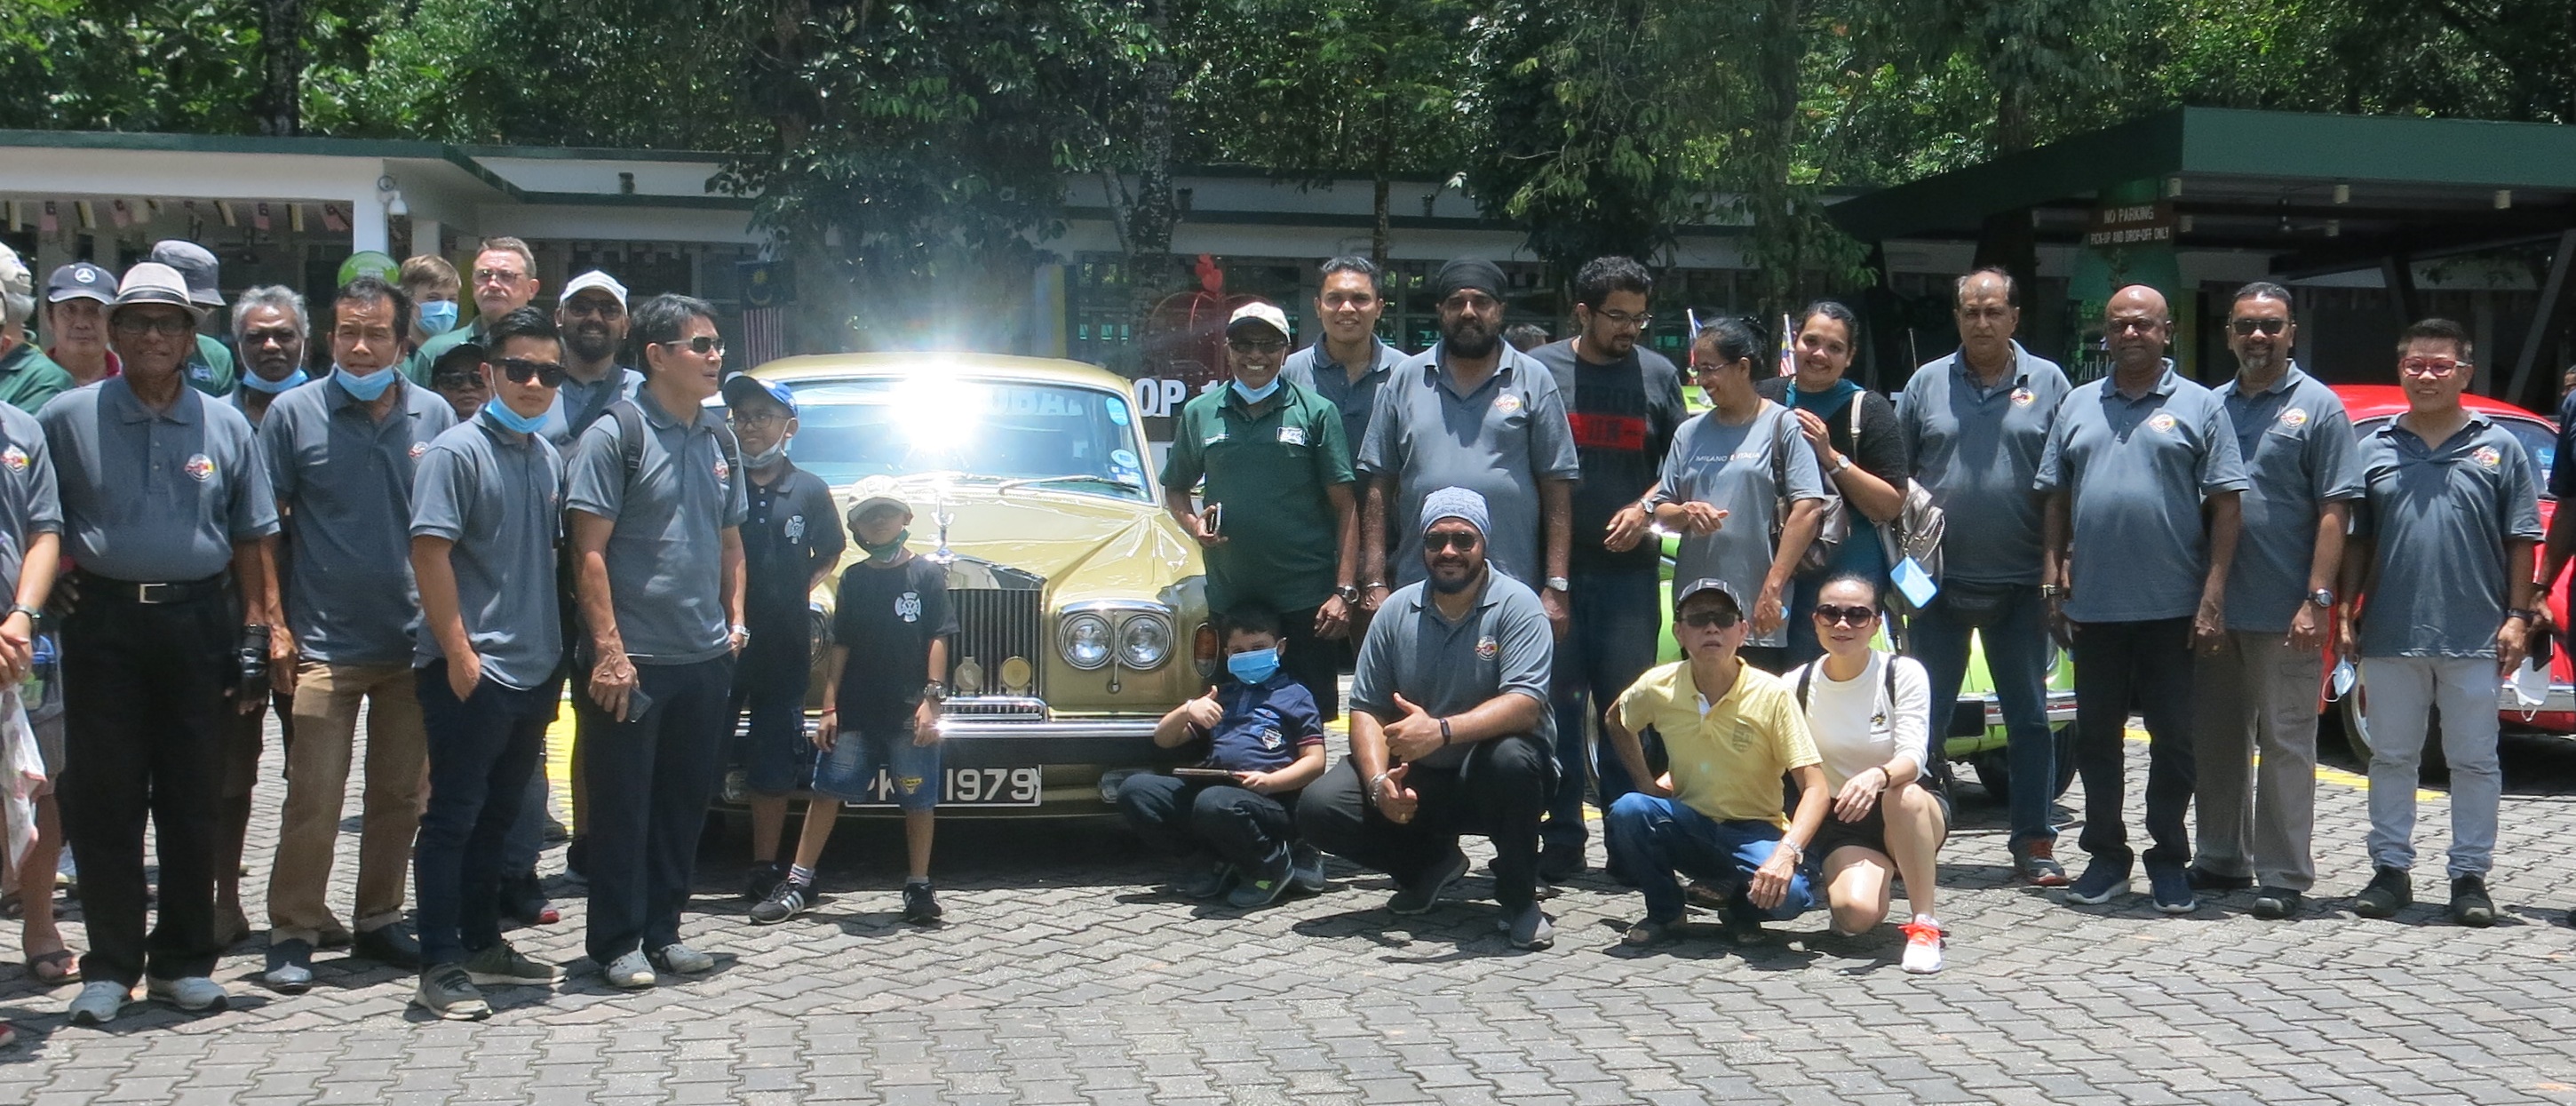 来自怡保及槟城的古董车爱好者，在必胜生态公园齐聚合照。